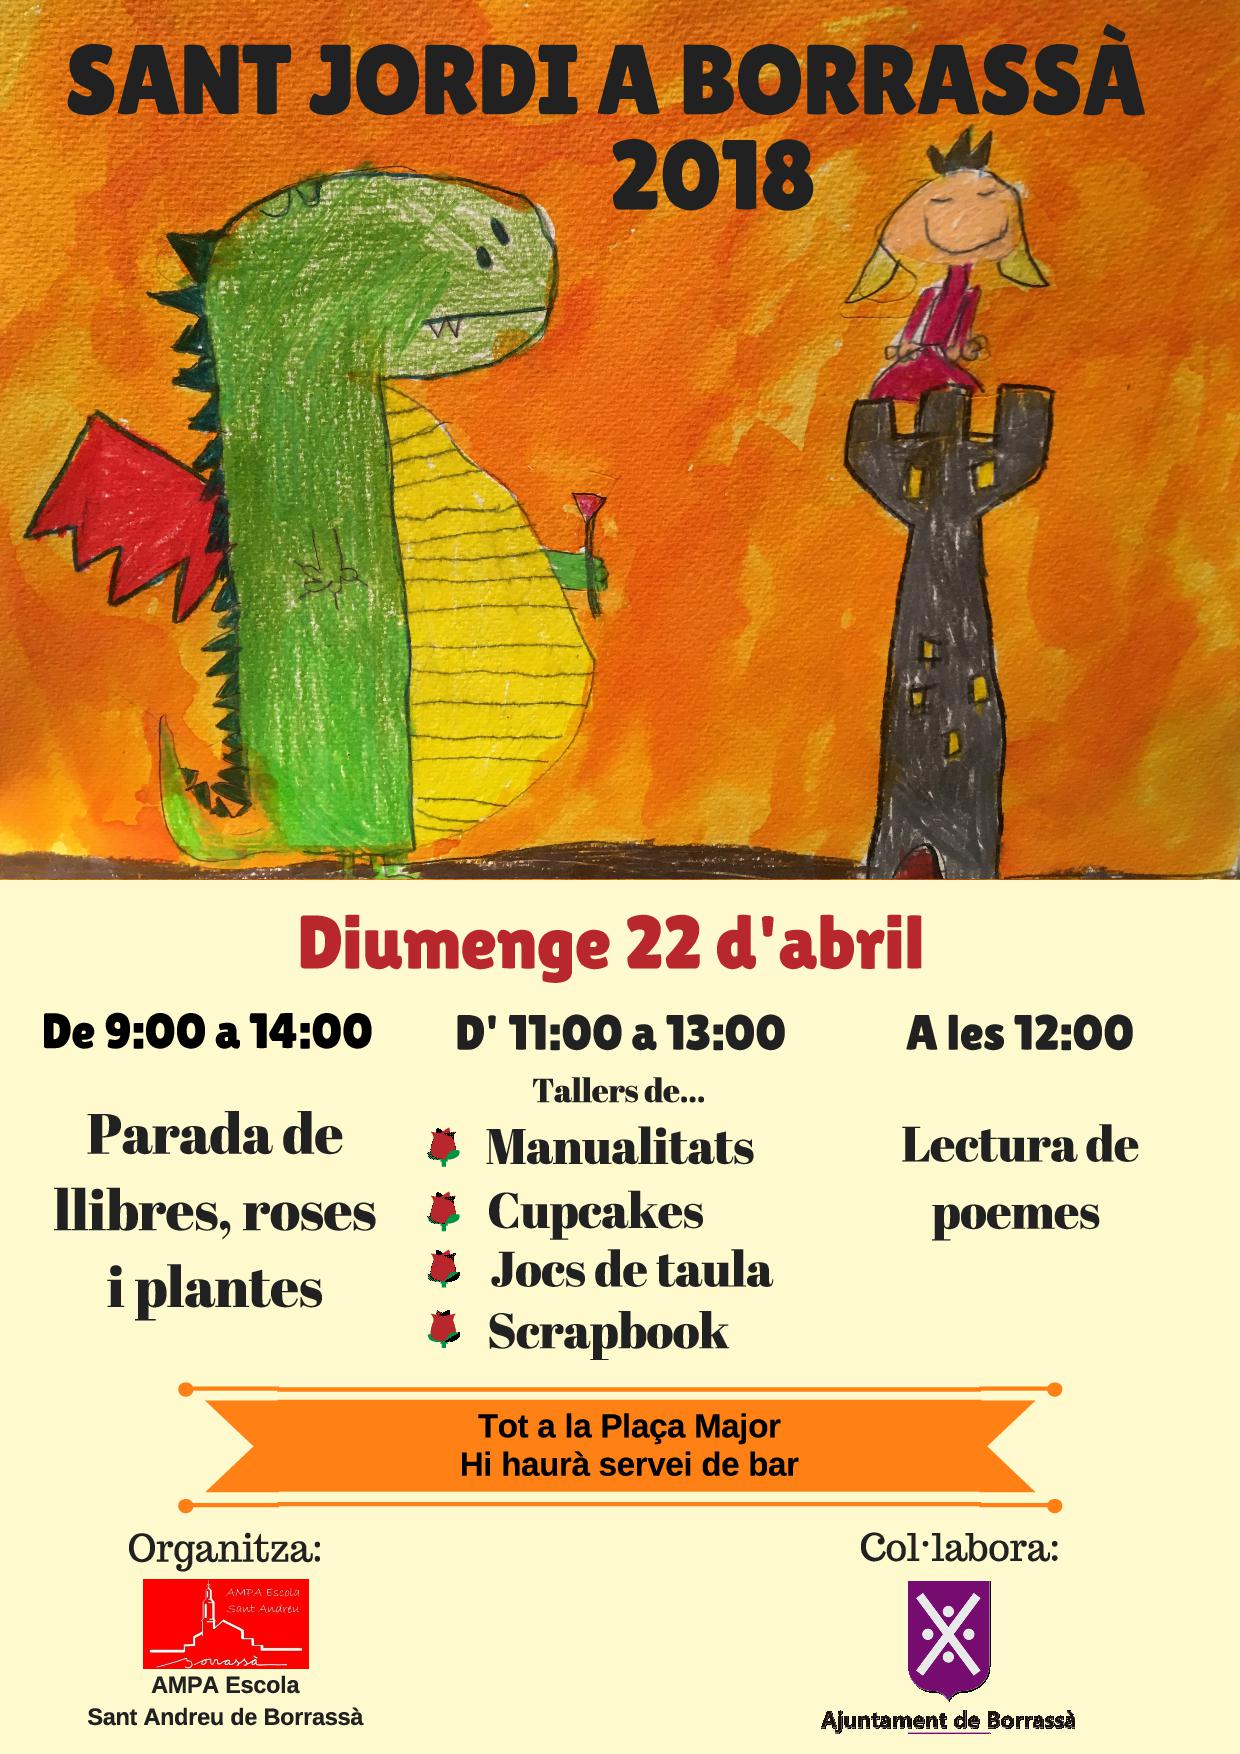 L'AMPA de l'escola Sant Andreu organitza les activitats per celebrar Sant Jordi, una diada que tindrà lloc el diumenge 22 d'abril. Hi haurà parada de llibres, roses i plantes; tallers de manualitats, "cupcakes", jocs de taula i "scrapbook"; i una lectura de poemes.